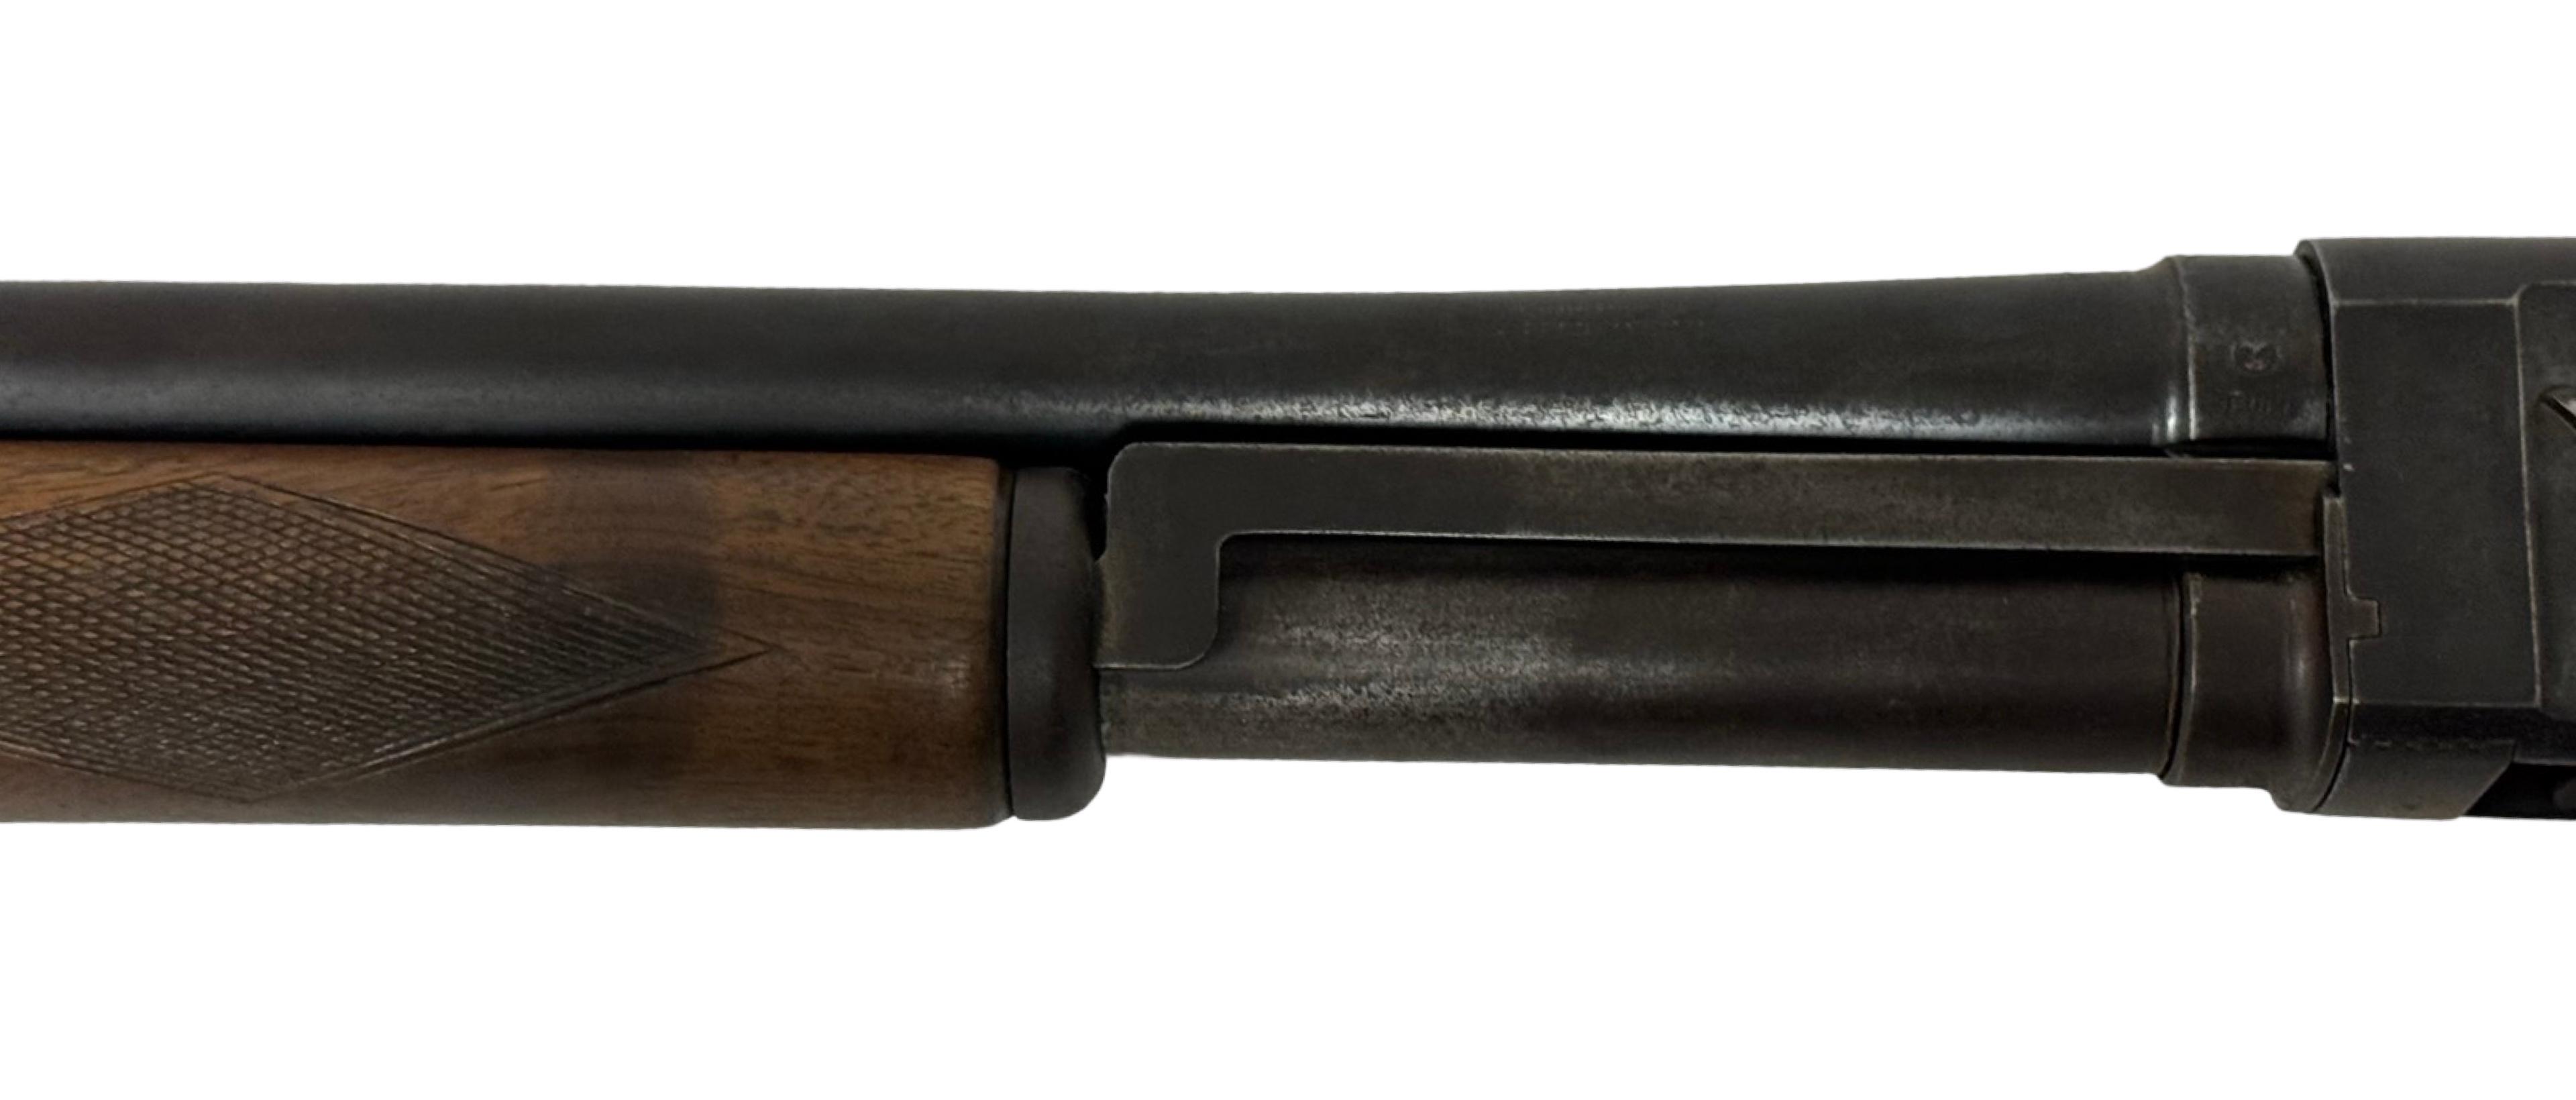 Westingfield Browning/Montgomery Ward and Co. Model 30 Pump Action Slamfire 16 GA. Shotgun